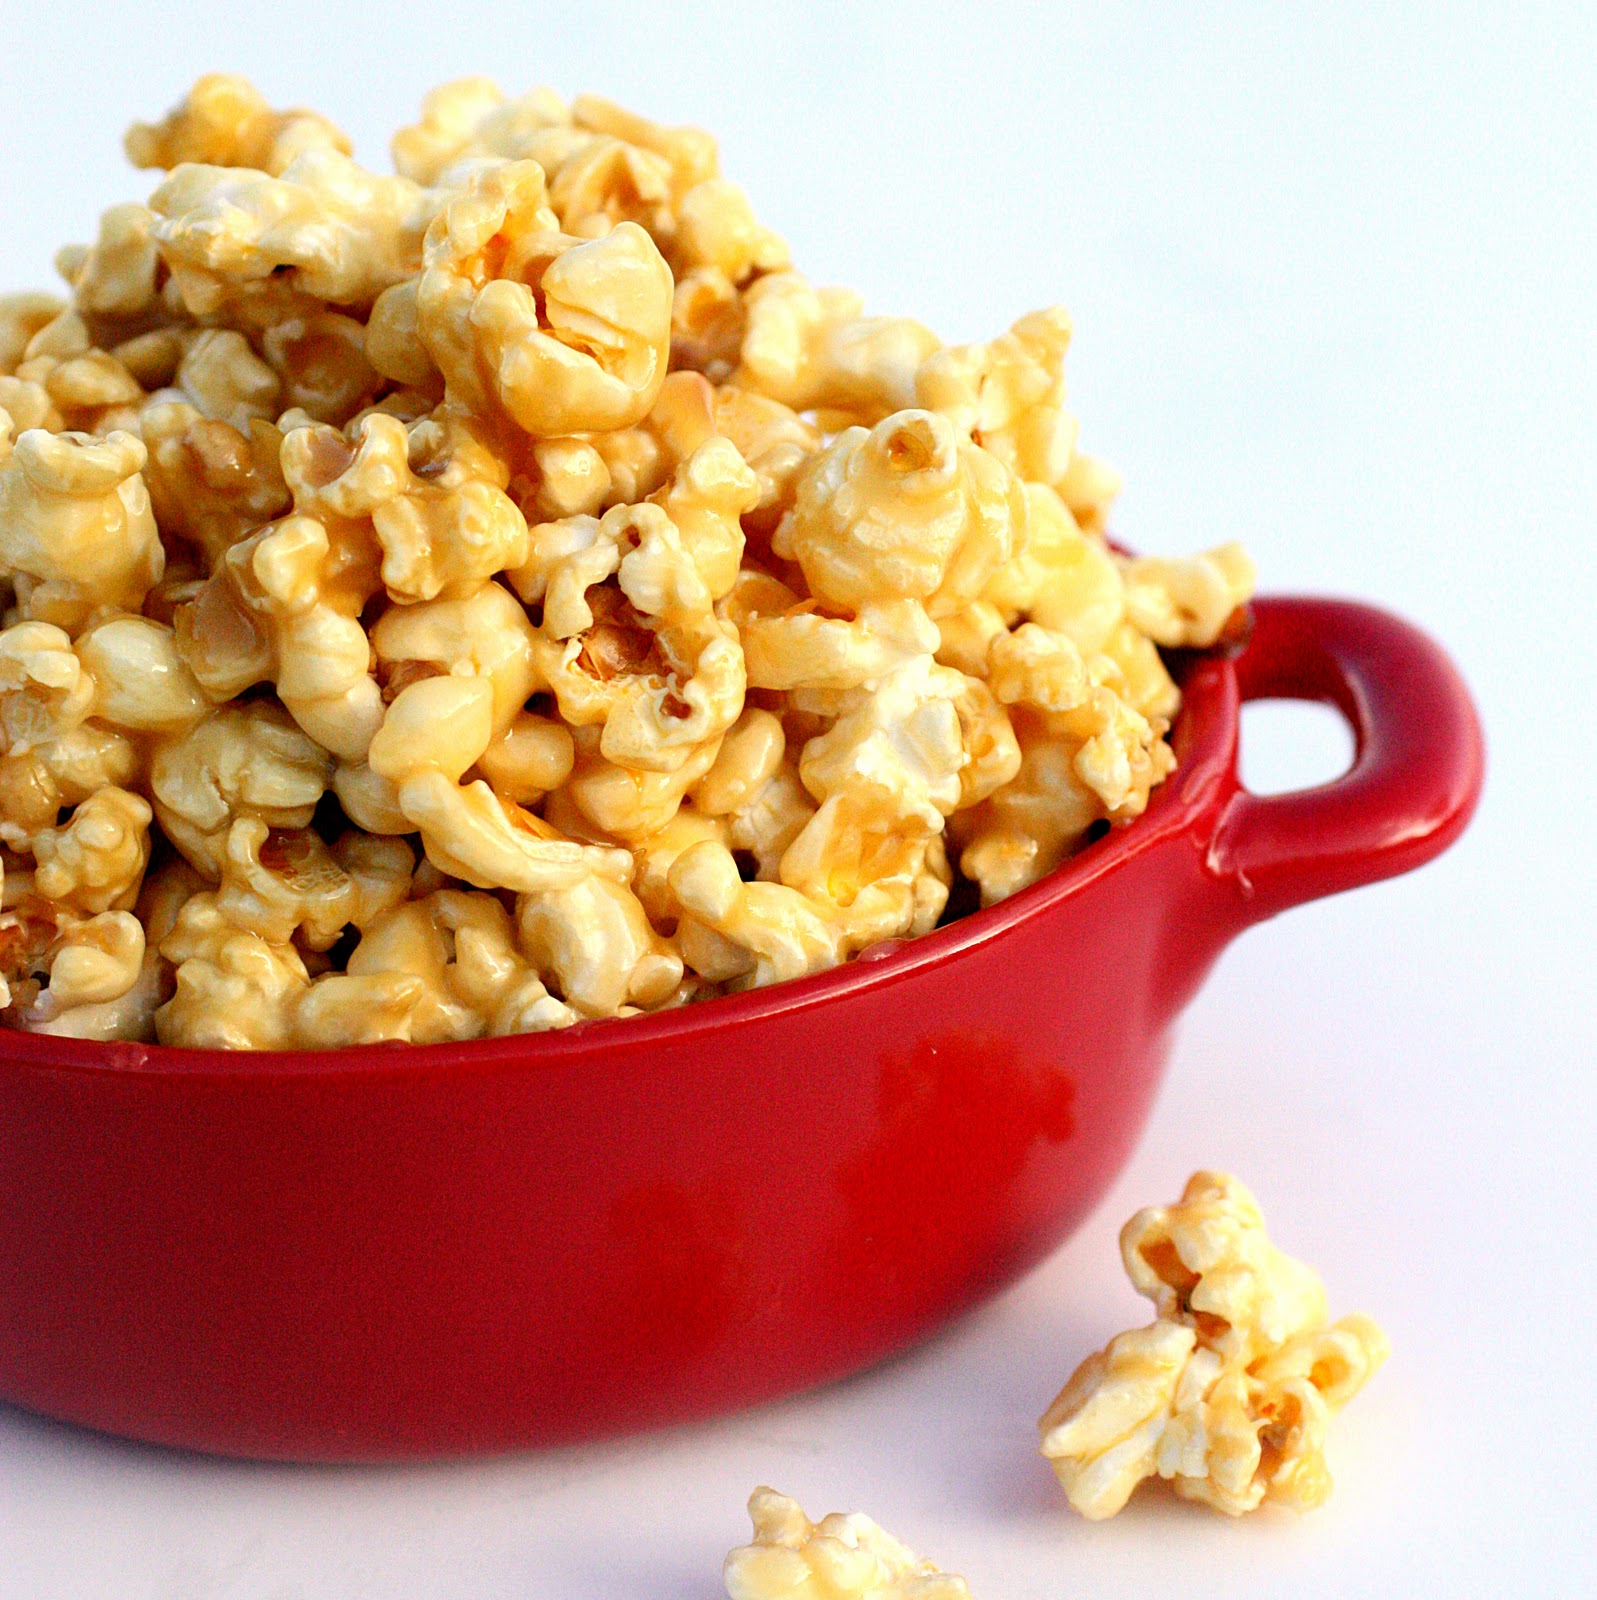 caramel-popcorn-snack.JPG